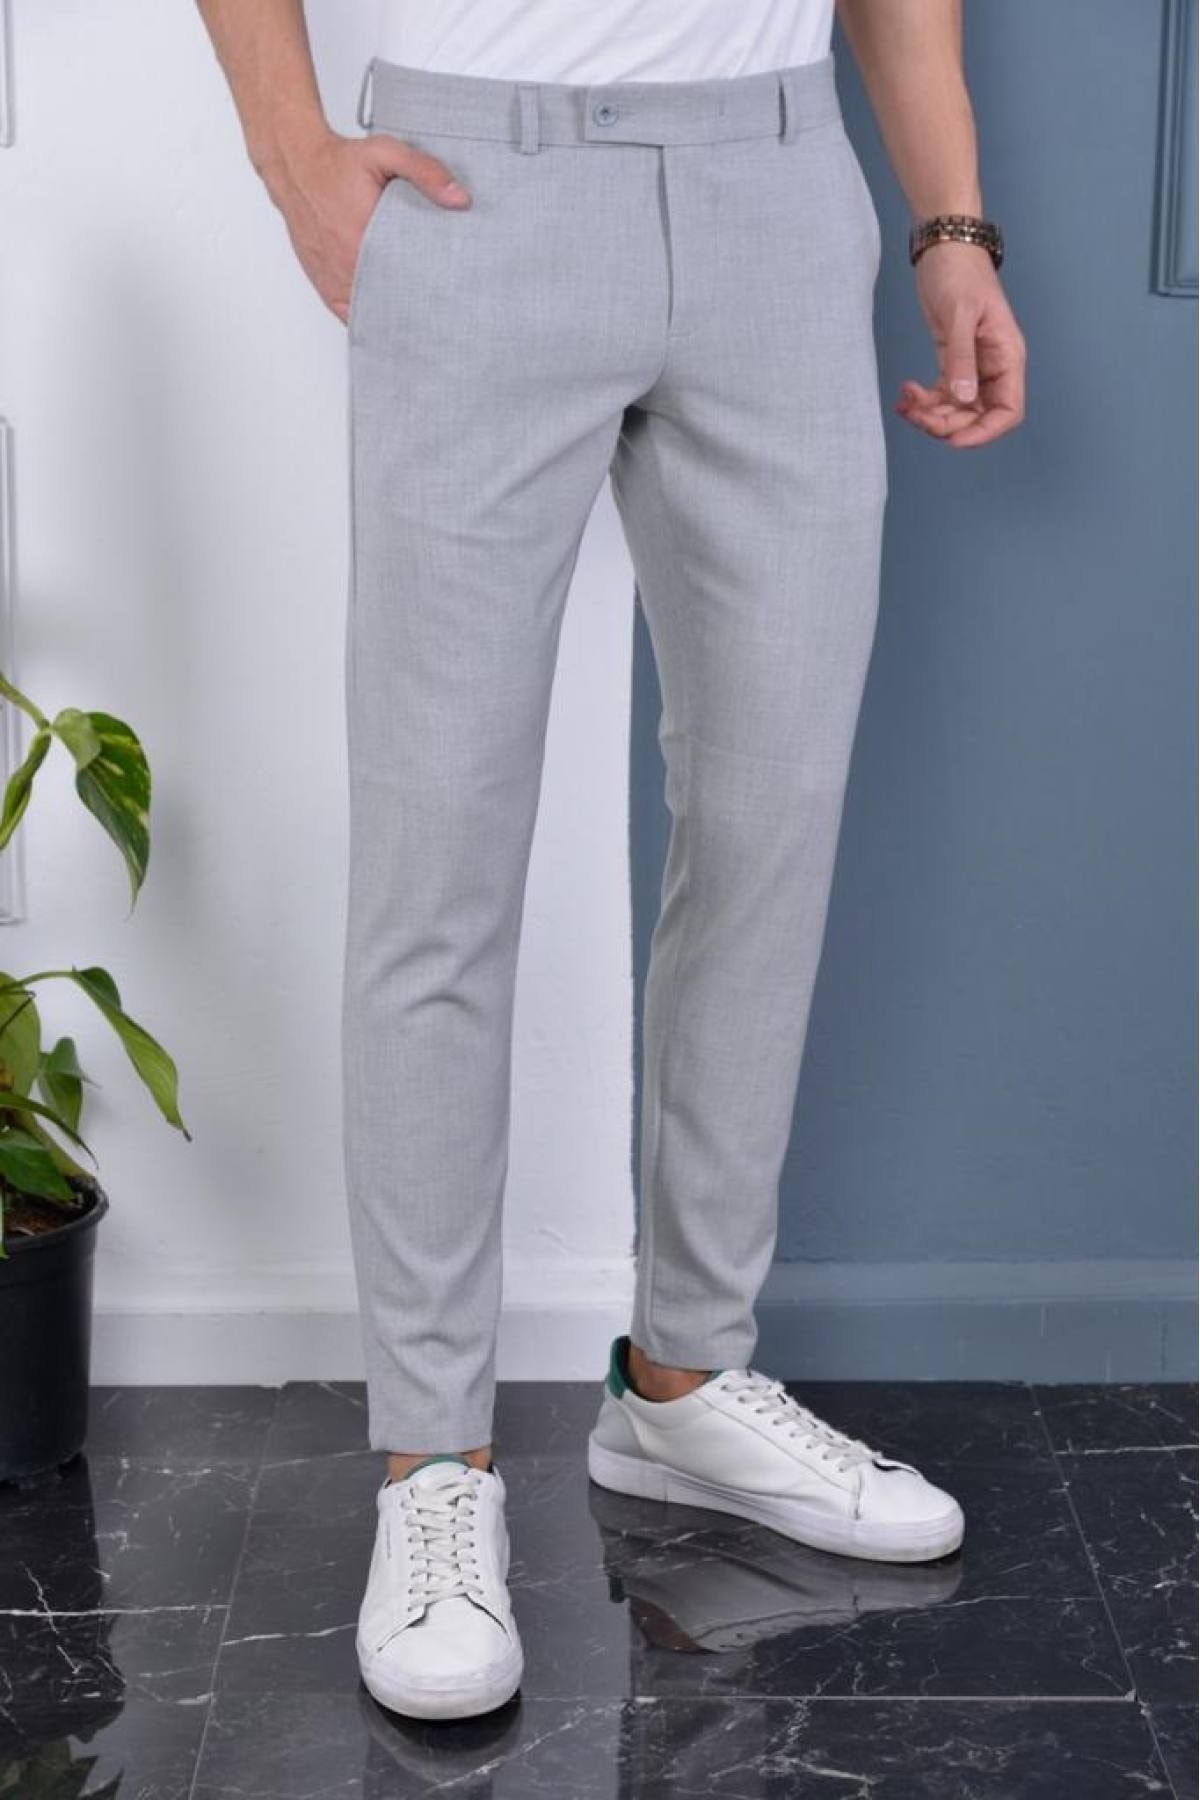 Gavazzi Erkek Gri Renk Italyan Kesim Kaliteli Esnek Likralı Bilek Boy Kumaş Pantolon